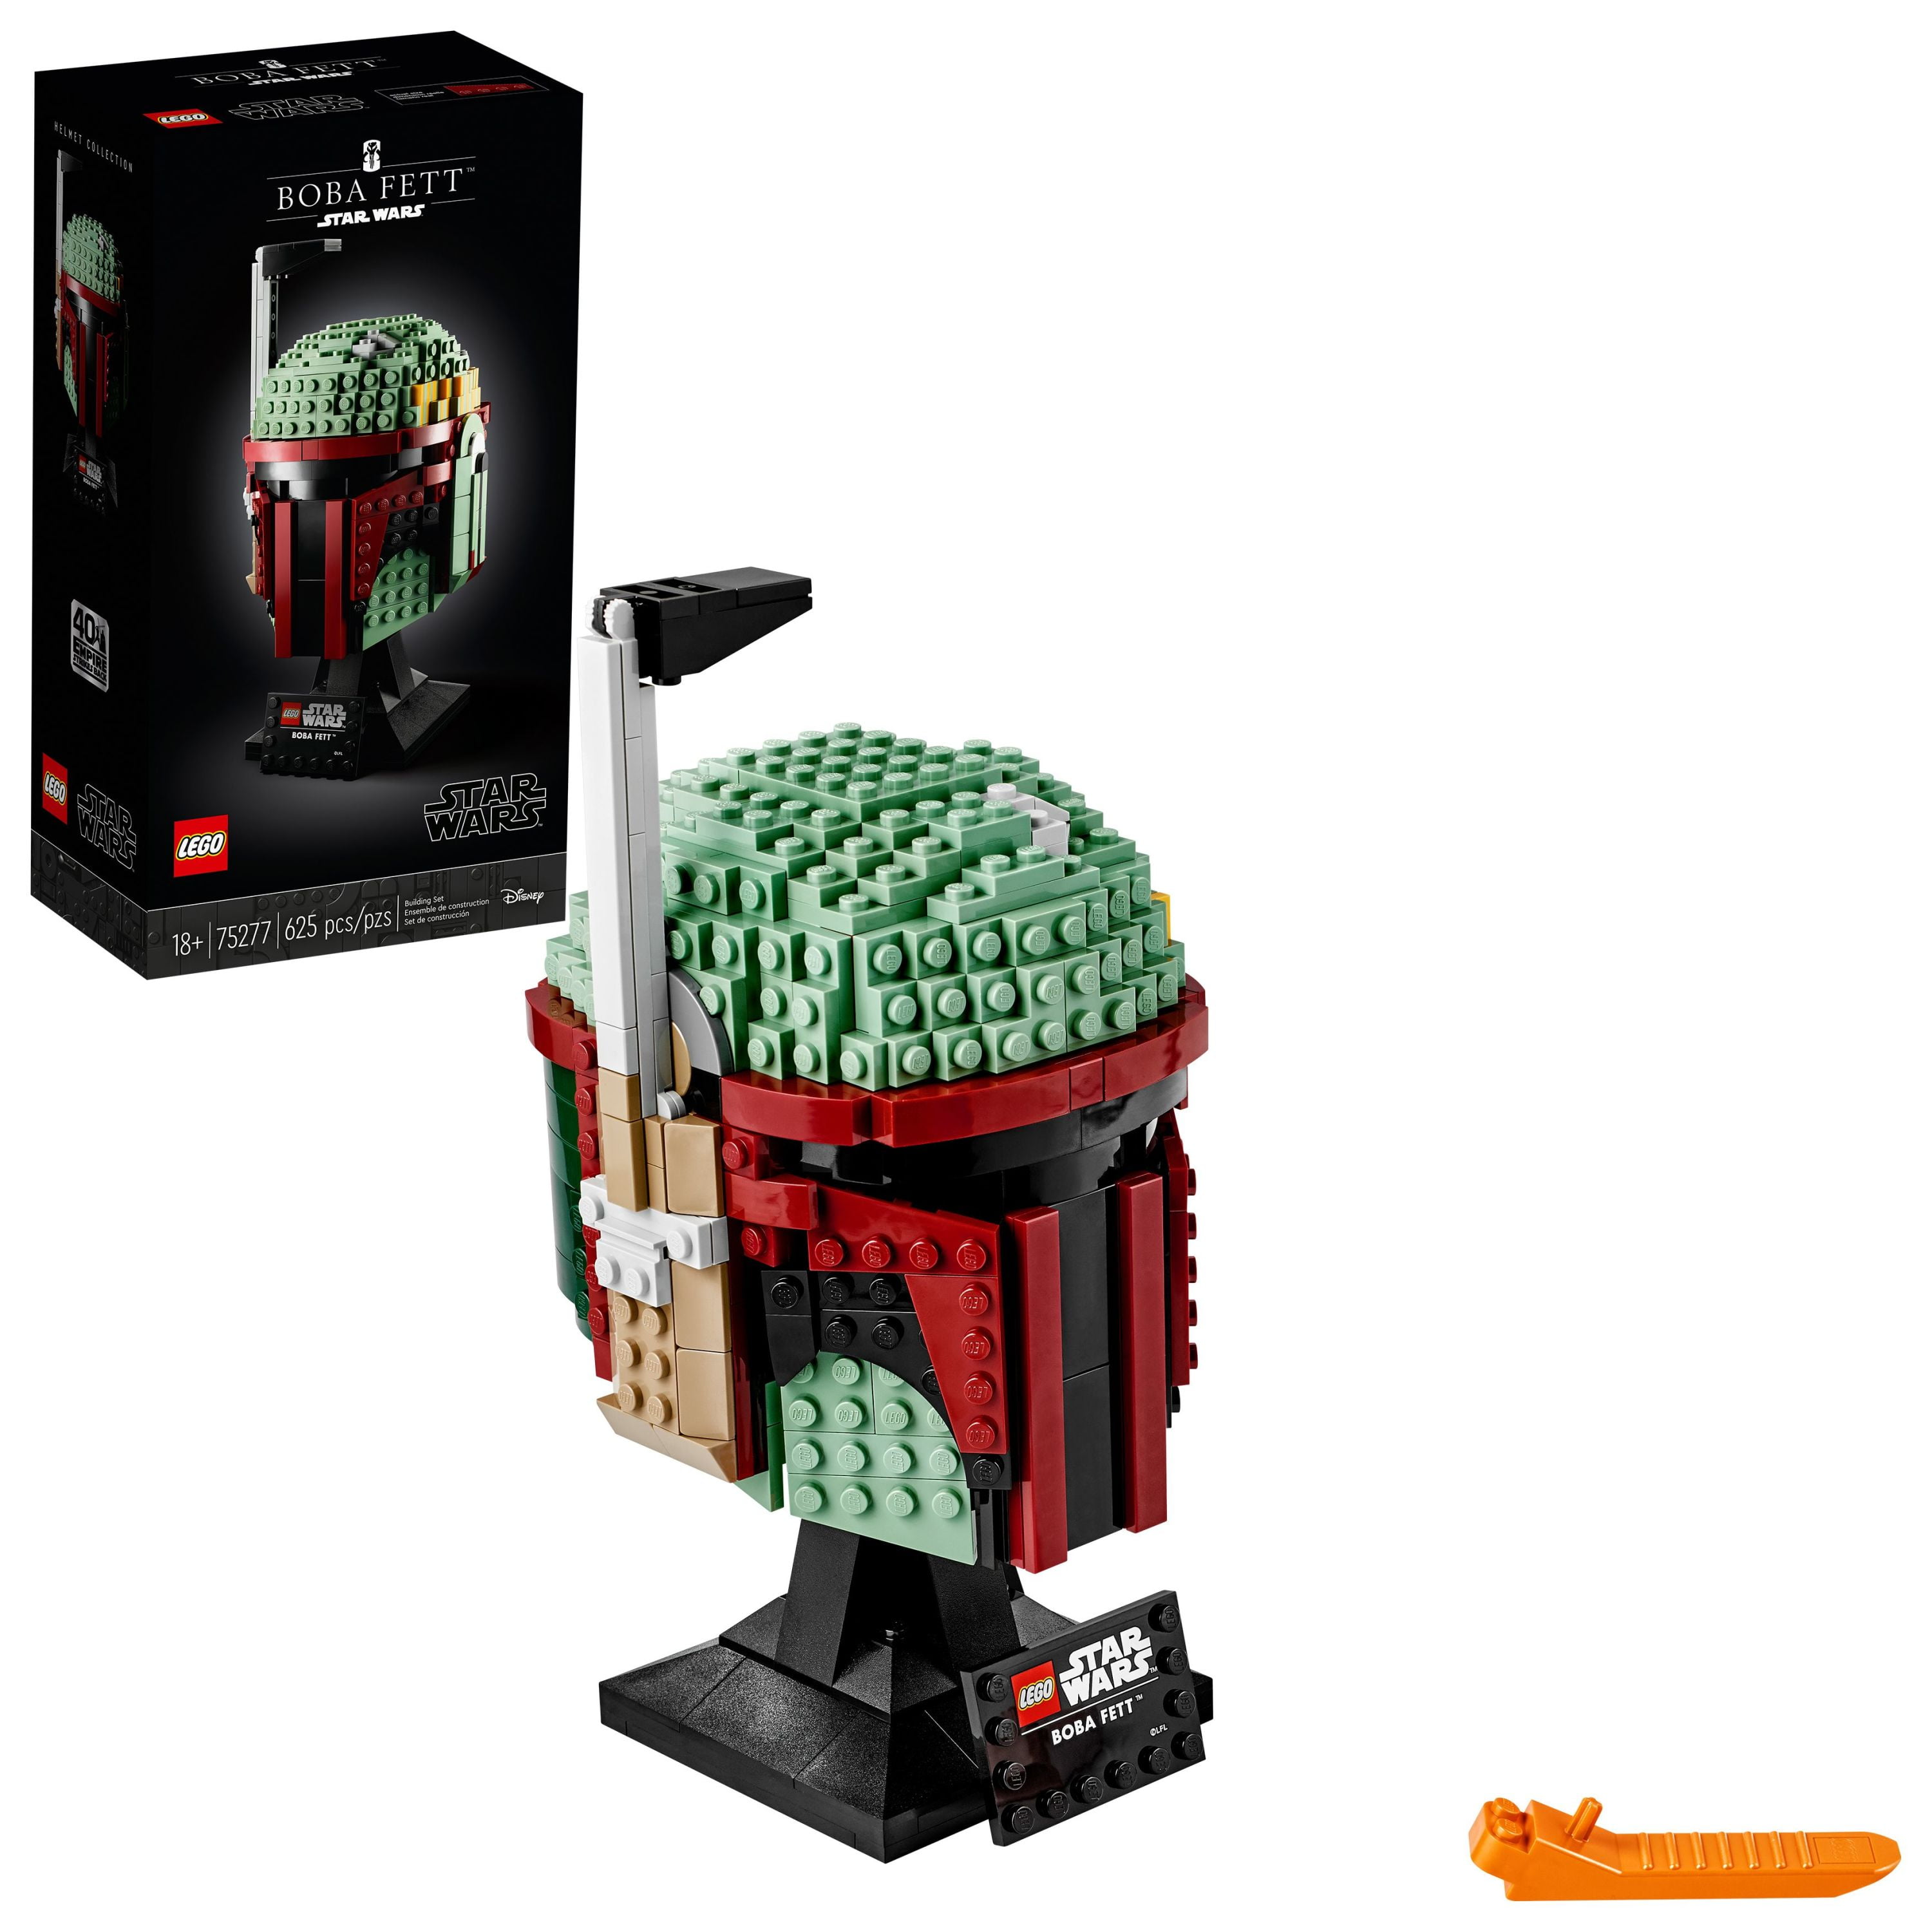 Mobilisere Vuggeviser Milestone LEGO Star Wars Boba Fett Helmet 75277 Building Kit - Walmart.com